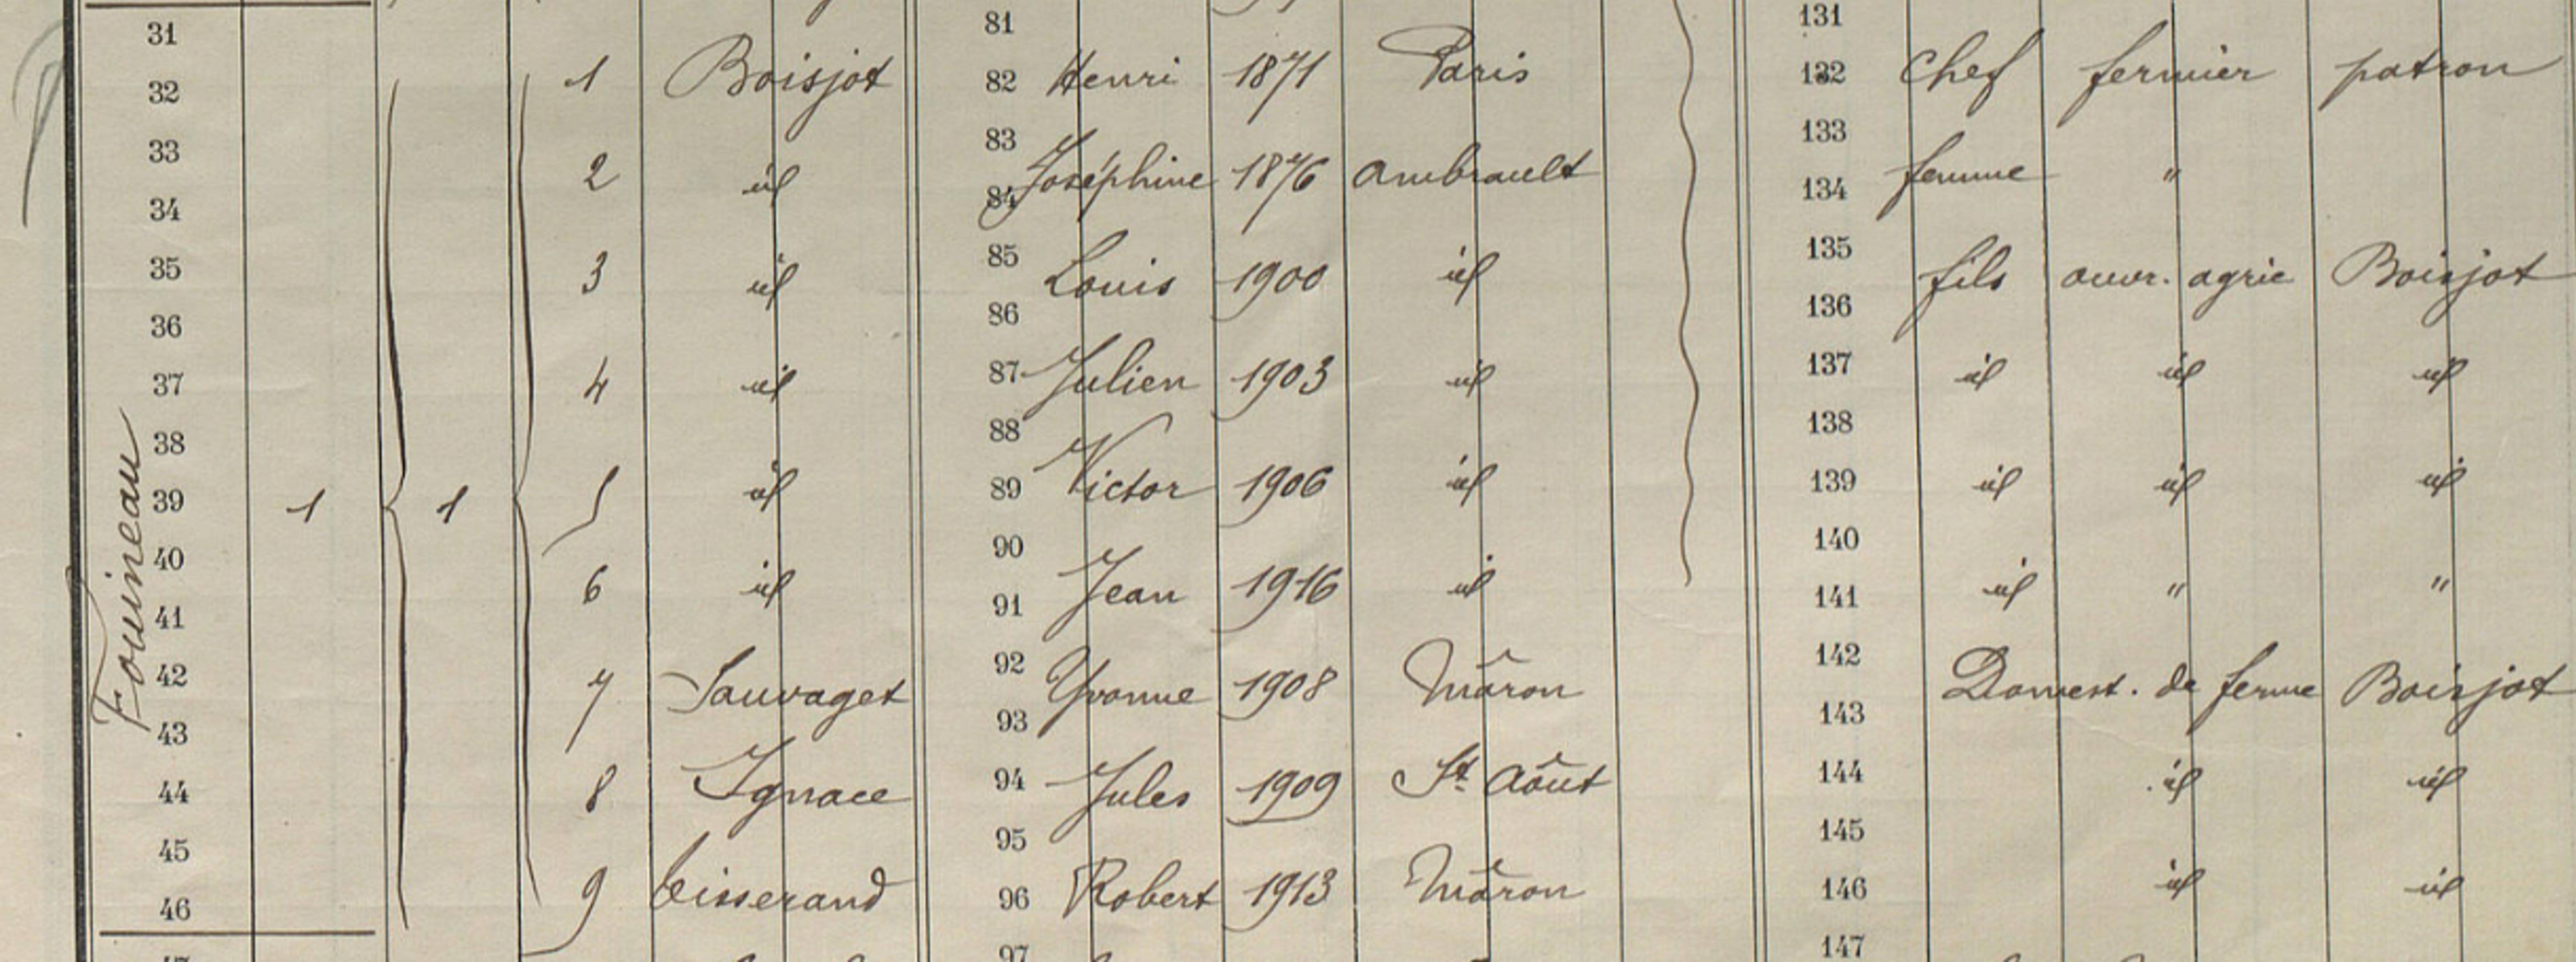 Famille Boisjot dans le recensement de Sassierges-Saint-Germain de 1926, domiciliée au domaine du Fouineau. Archives départementales de l’Indre, cote M 4969, vue 16/18 sur le site Internet